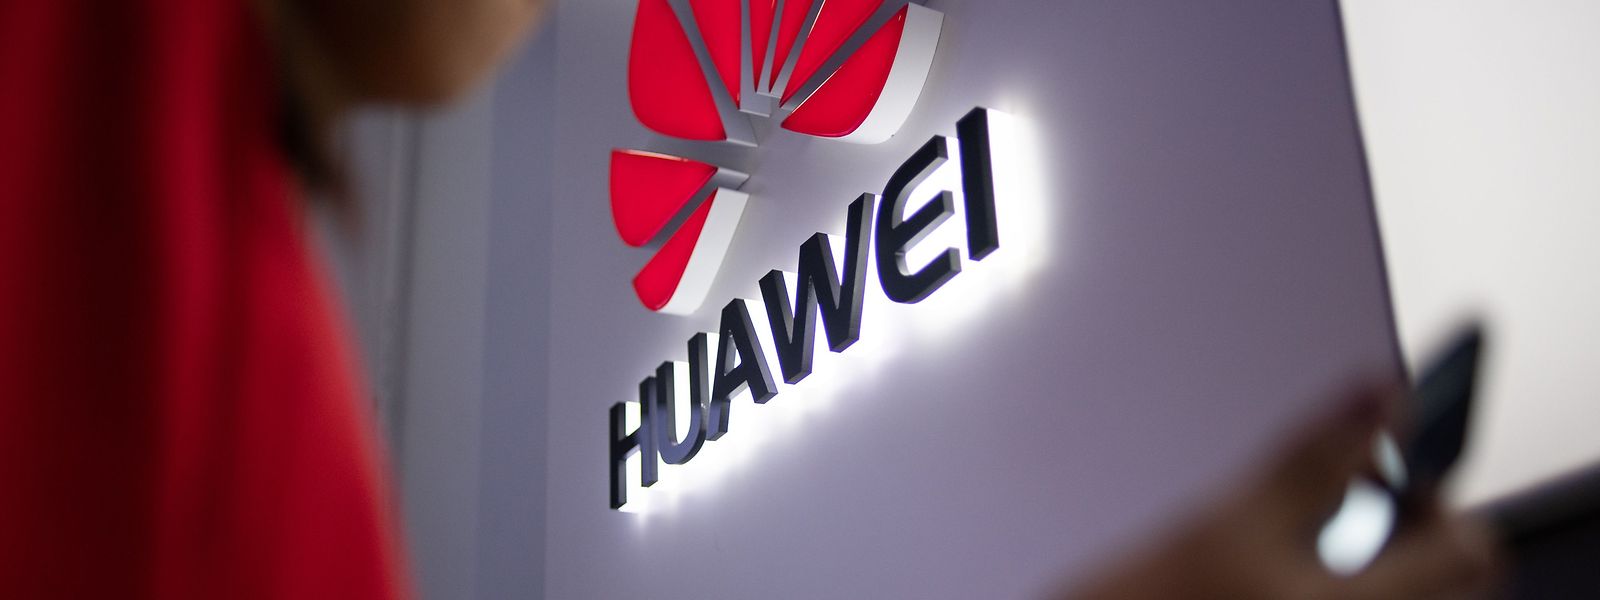 Huawei war besonders stark von dem Streit getroffen worden.